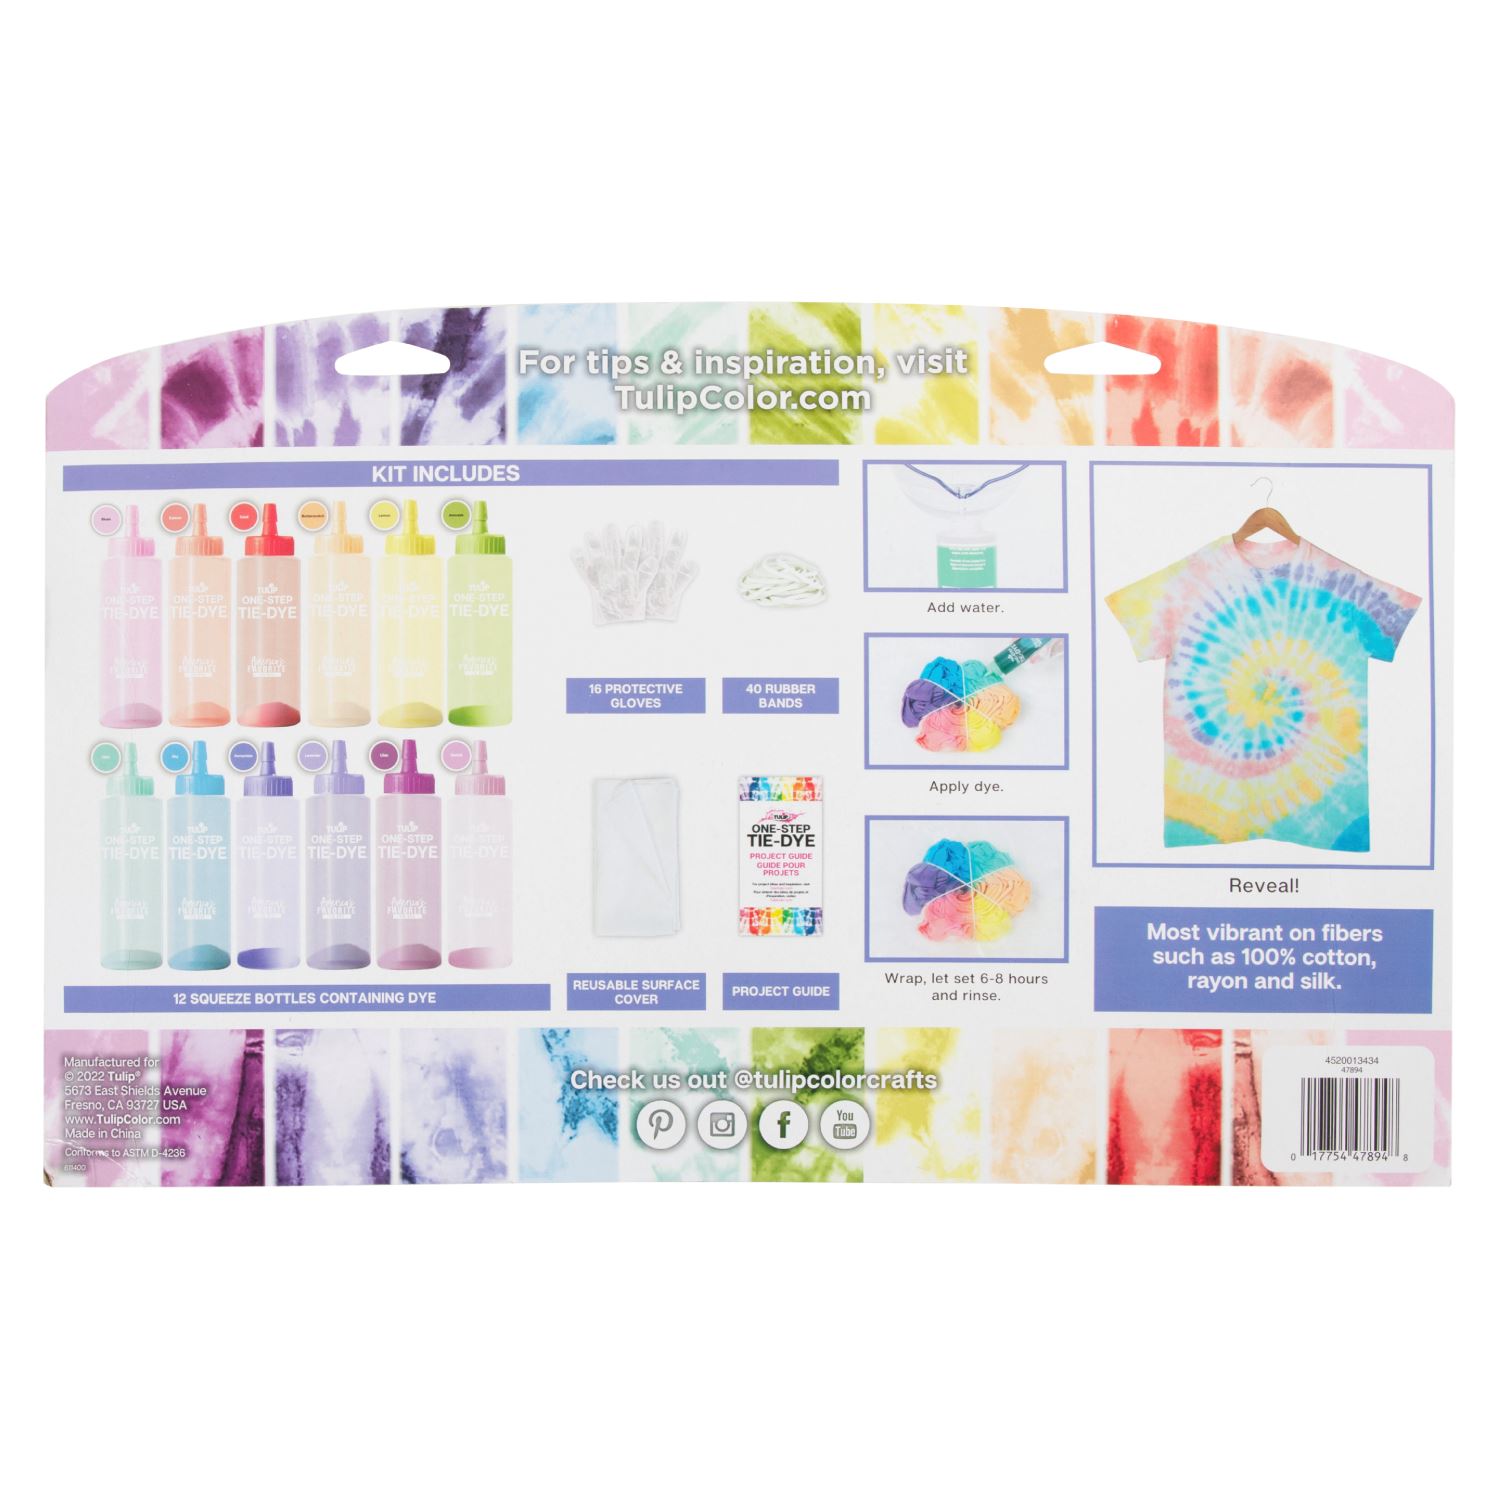 IOliveYou® Tie Dye Kit | Pastel Kids Party Theme